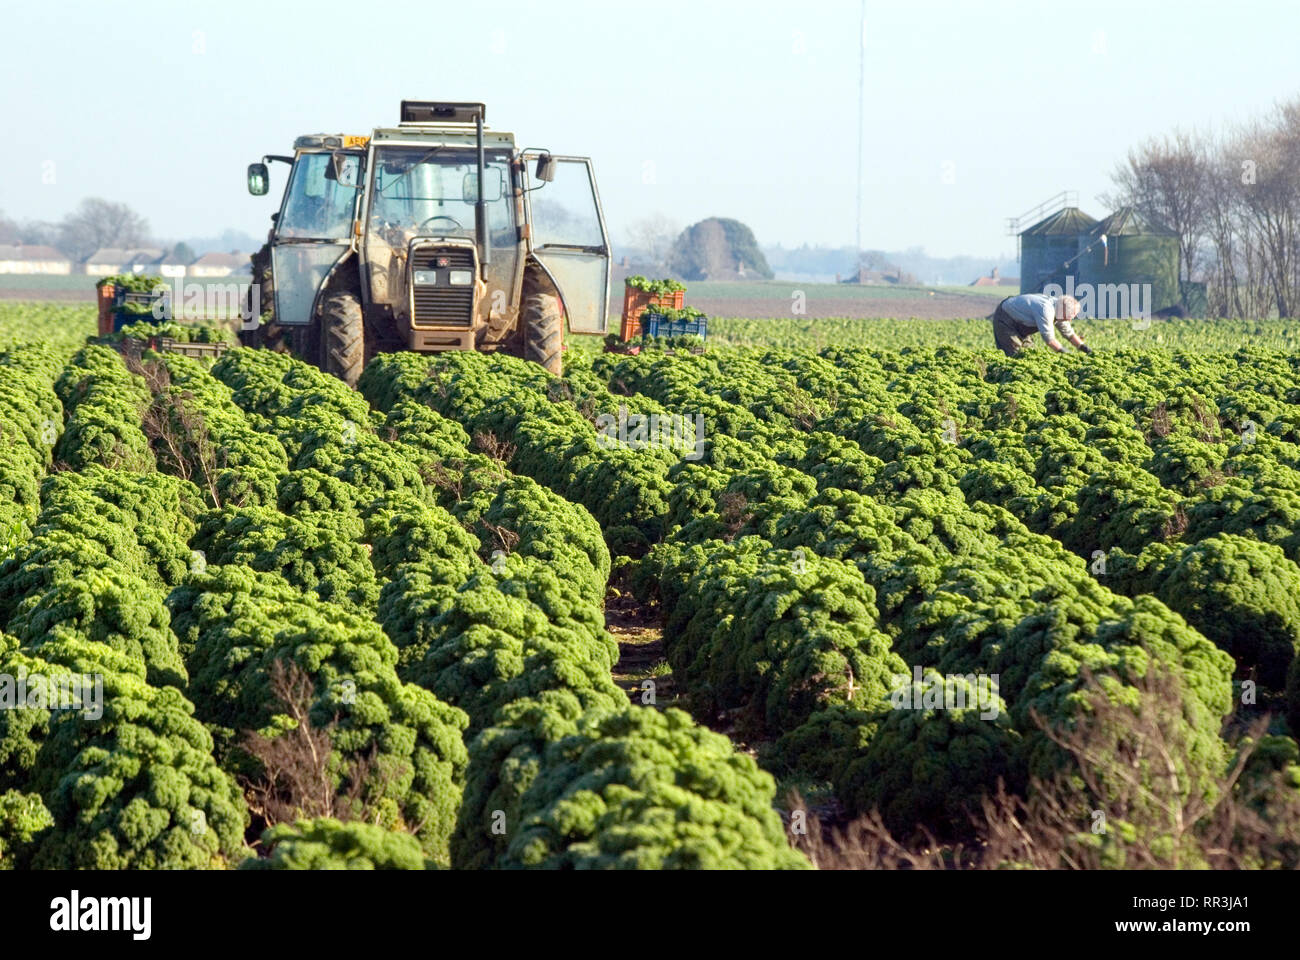 Harvesting Curly Kale, UK Stock Photo